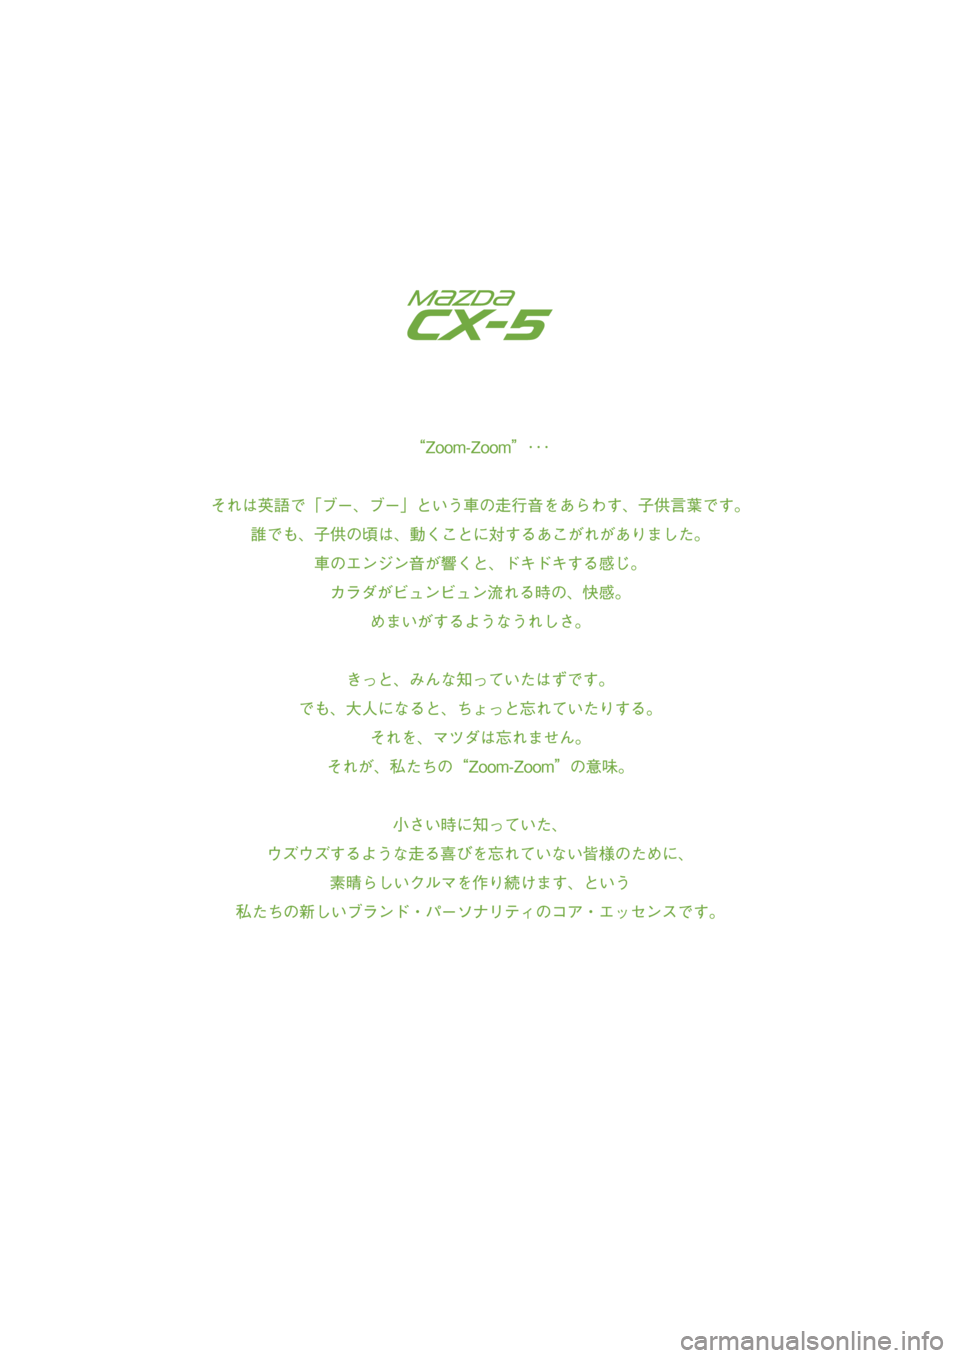 MAZDA MODEL CX-5 2018  取扱説明書 (in Japanese) CX-5_Kテ_Edition1_QG.indb   1CX-5_Kテ_Edition1_QG.indb   12017/07/11   16:24:172017/07/11   16:24:17 